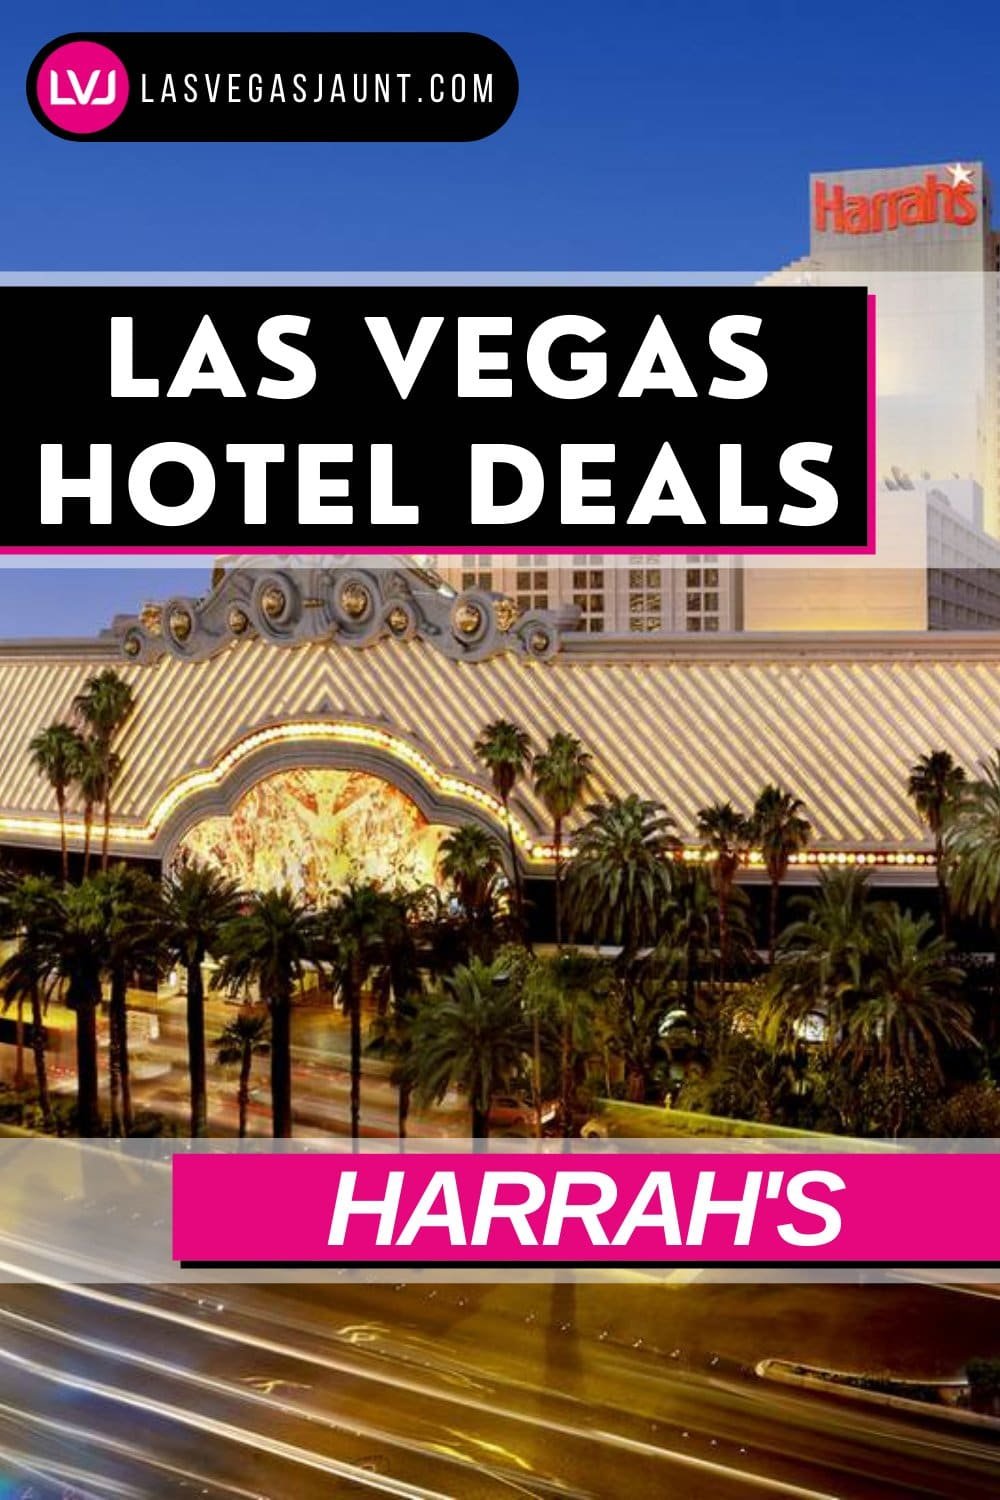 Harrah's Hotel Las Vegas Deals Promo Codes & Discounts